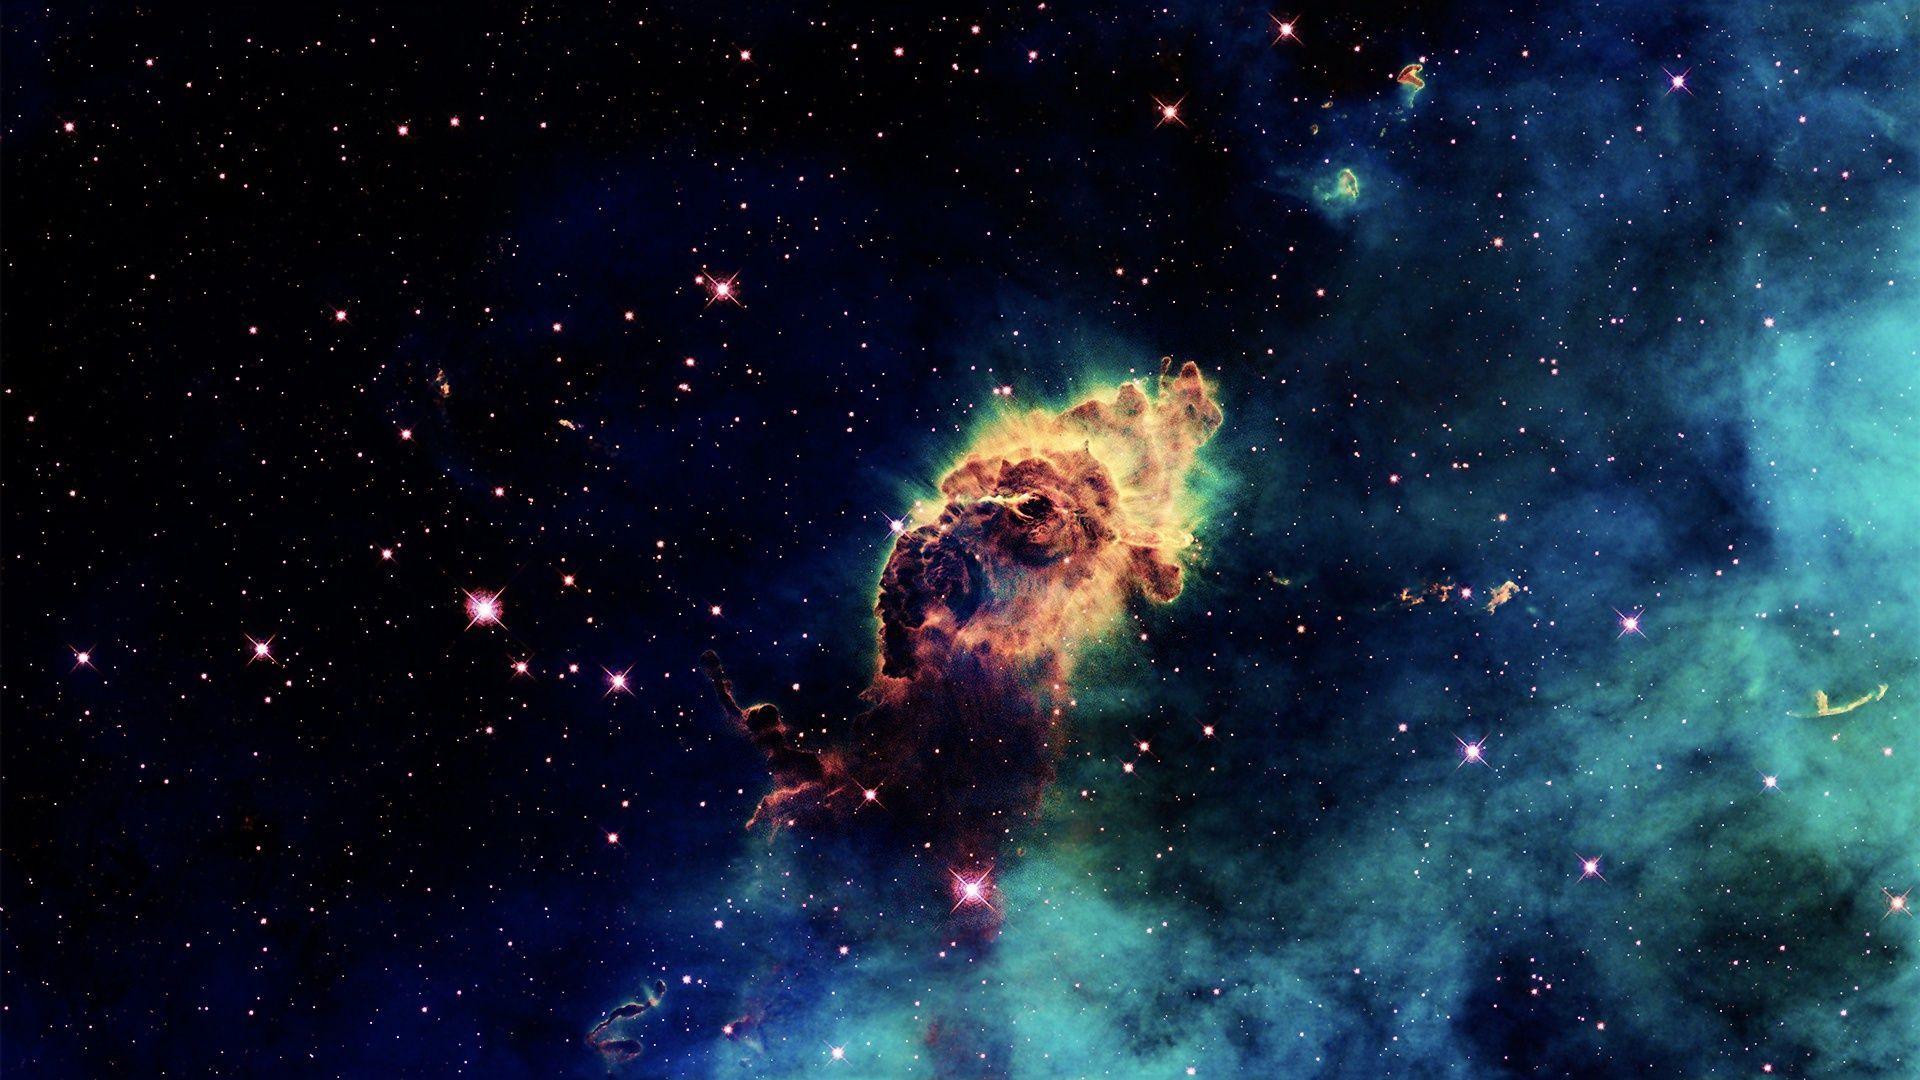 Cool Nebula Wallpaper 10382 1920x1080 px